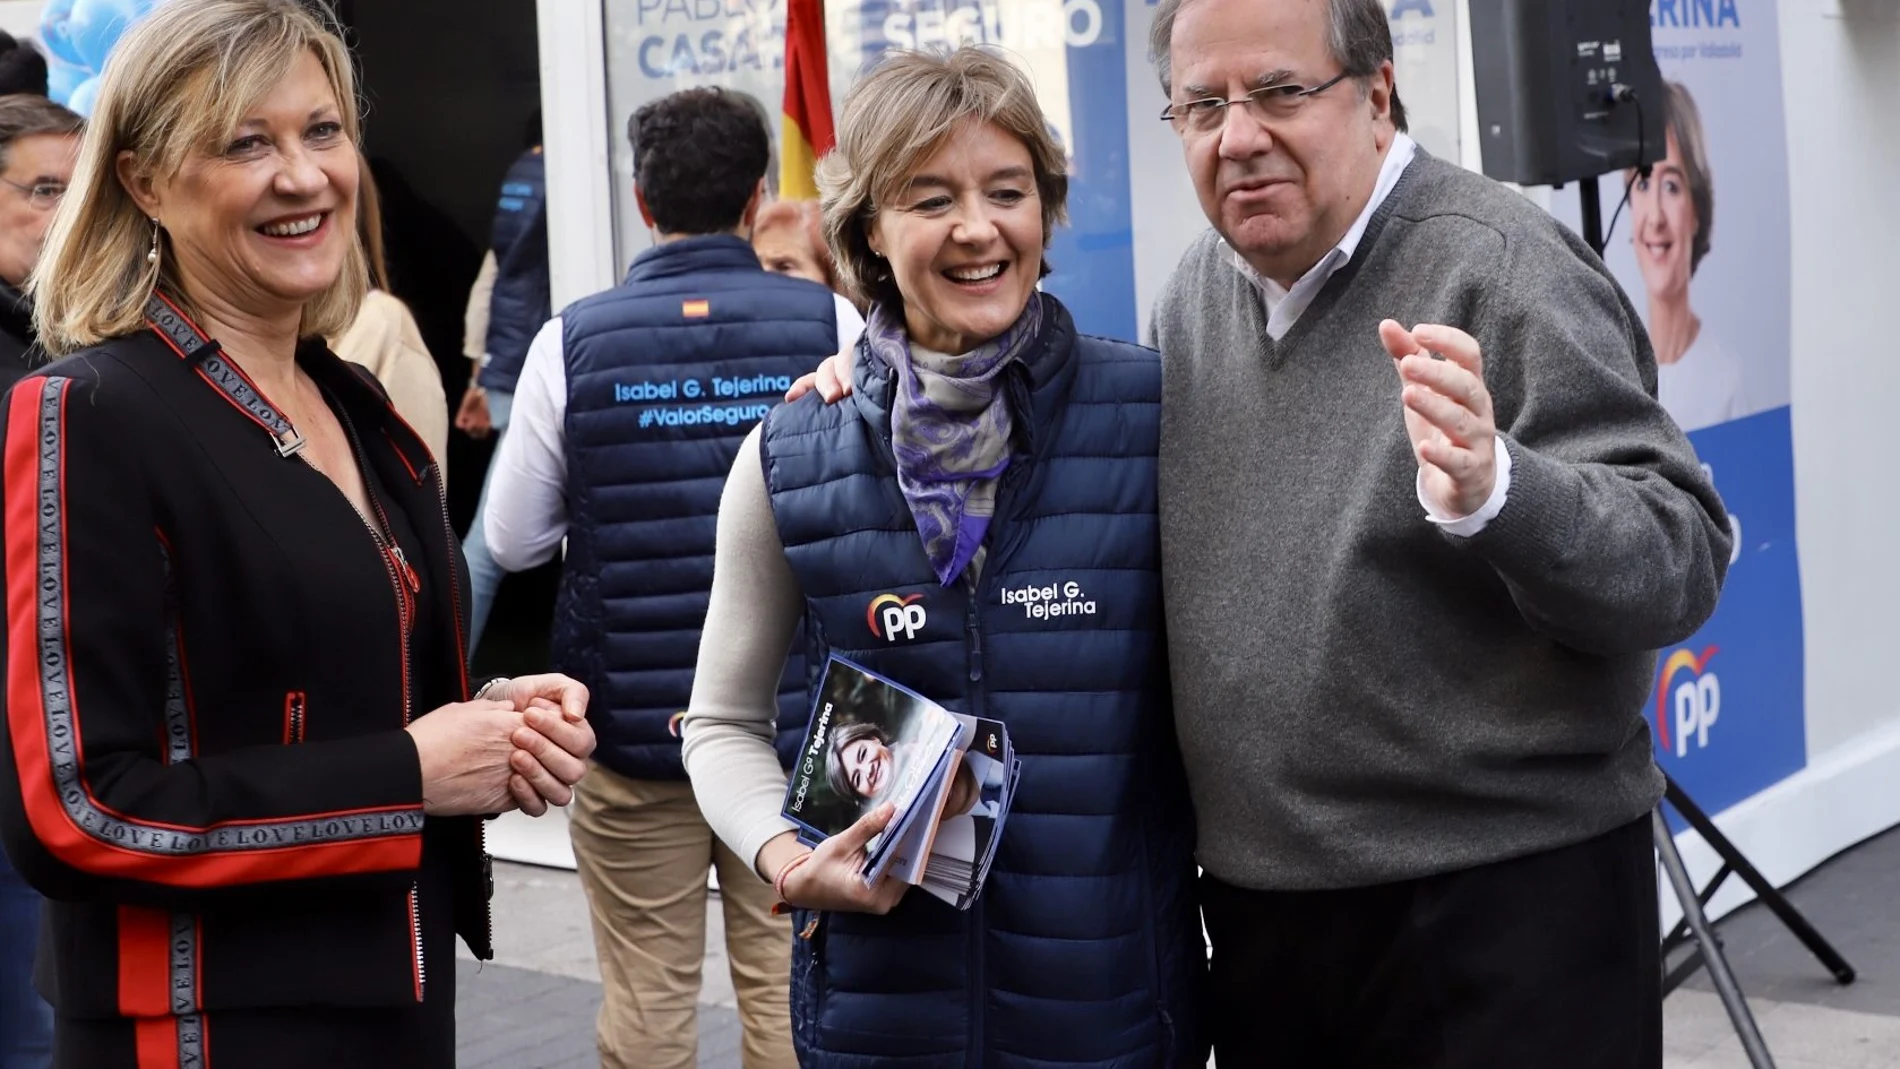 El presidente de la Junta, Juan Vicente Herrera, muestra su apoyo a las candidatas Isabel García Tejerina y Pilar del Olmo